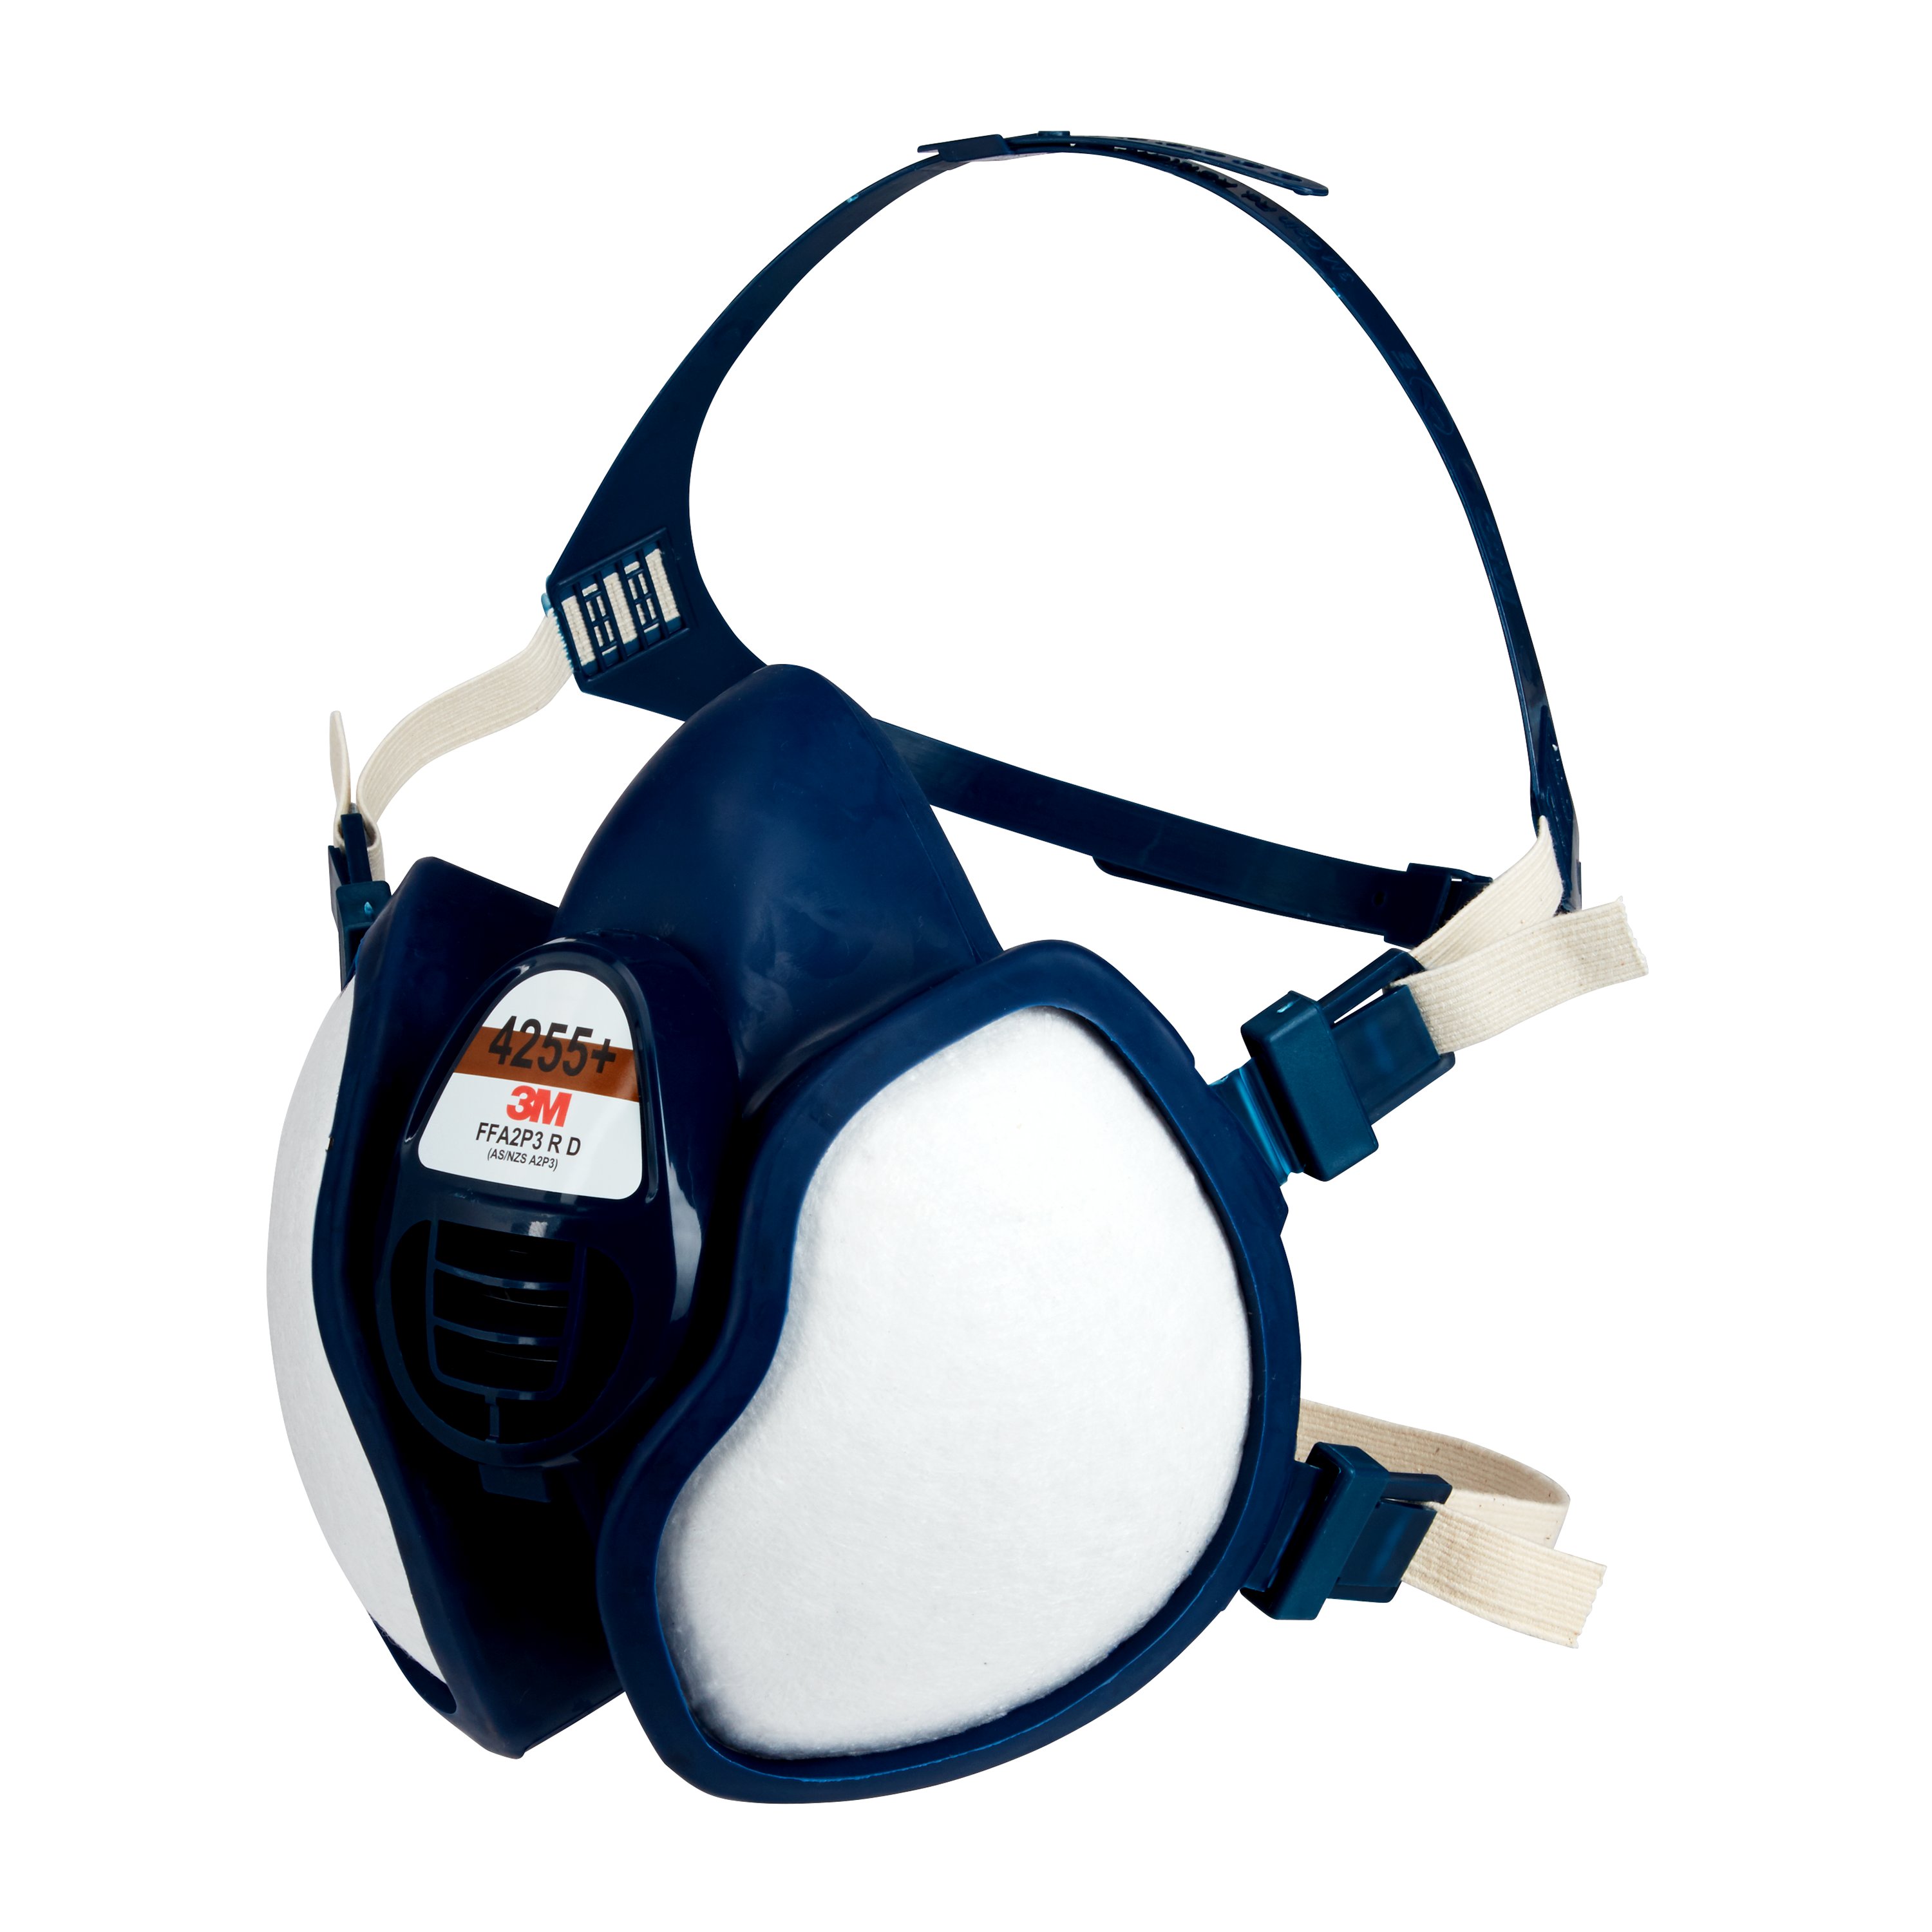 Demi-masque à filtres intégrés FFA2P3 R D, 4255+ - AFS